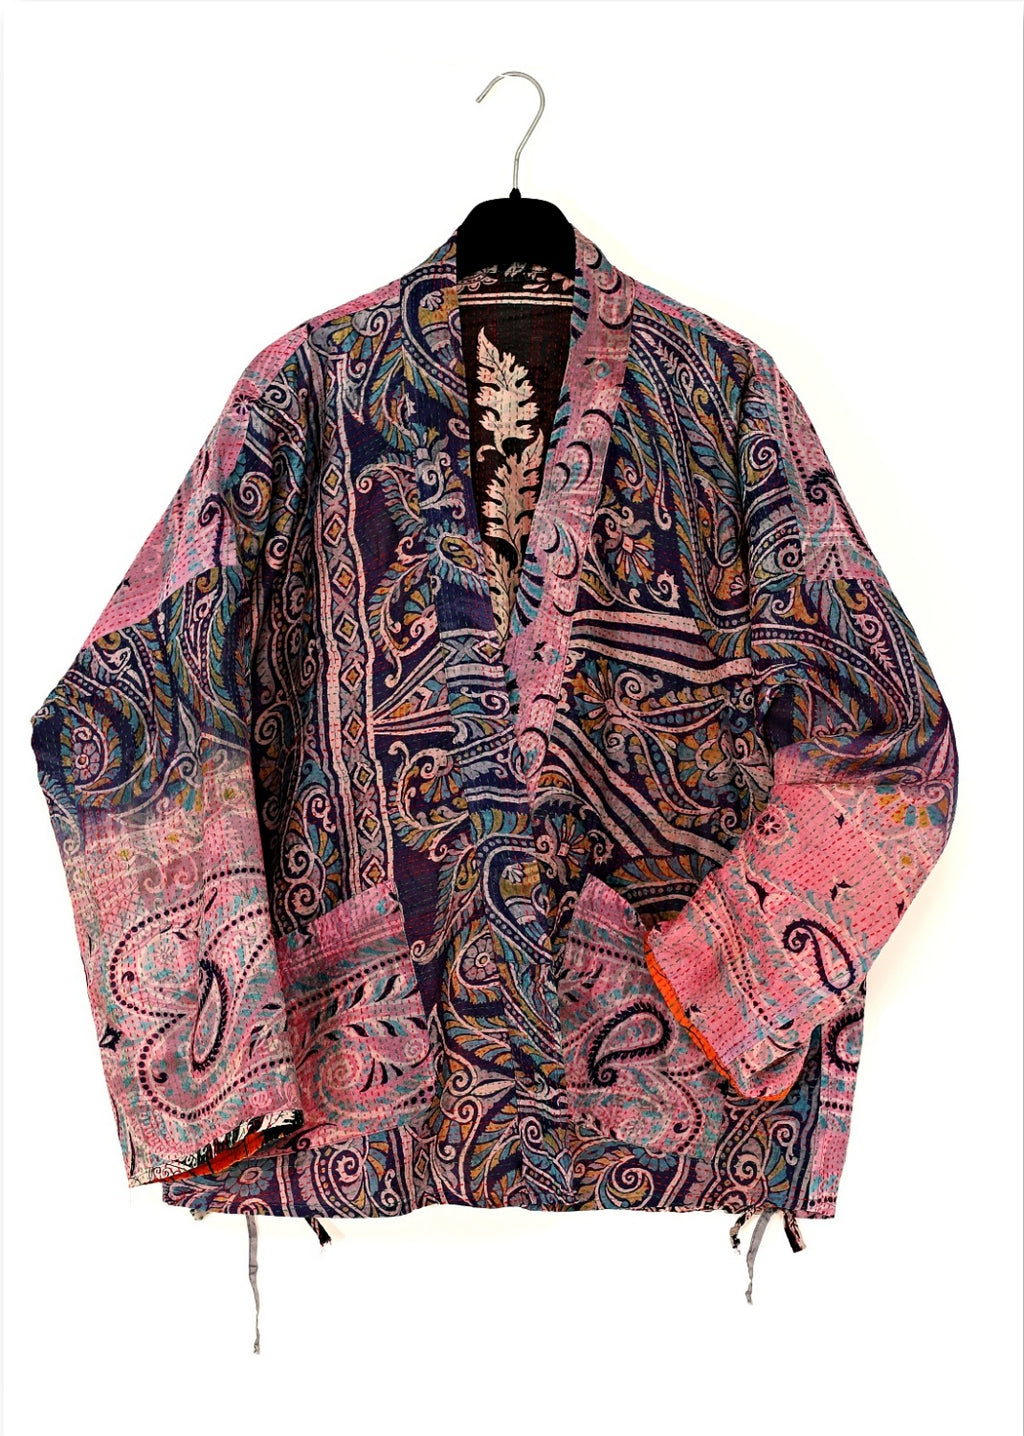 Vändbar siden jacka, av insamlade handtryckta vintage tyger, en vacker blandning av konst och hantverk. Jackan är helt unik och finns bara i ett exemplar.